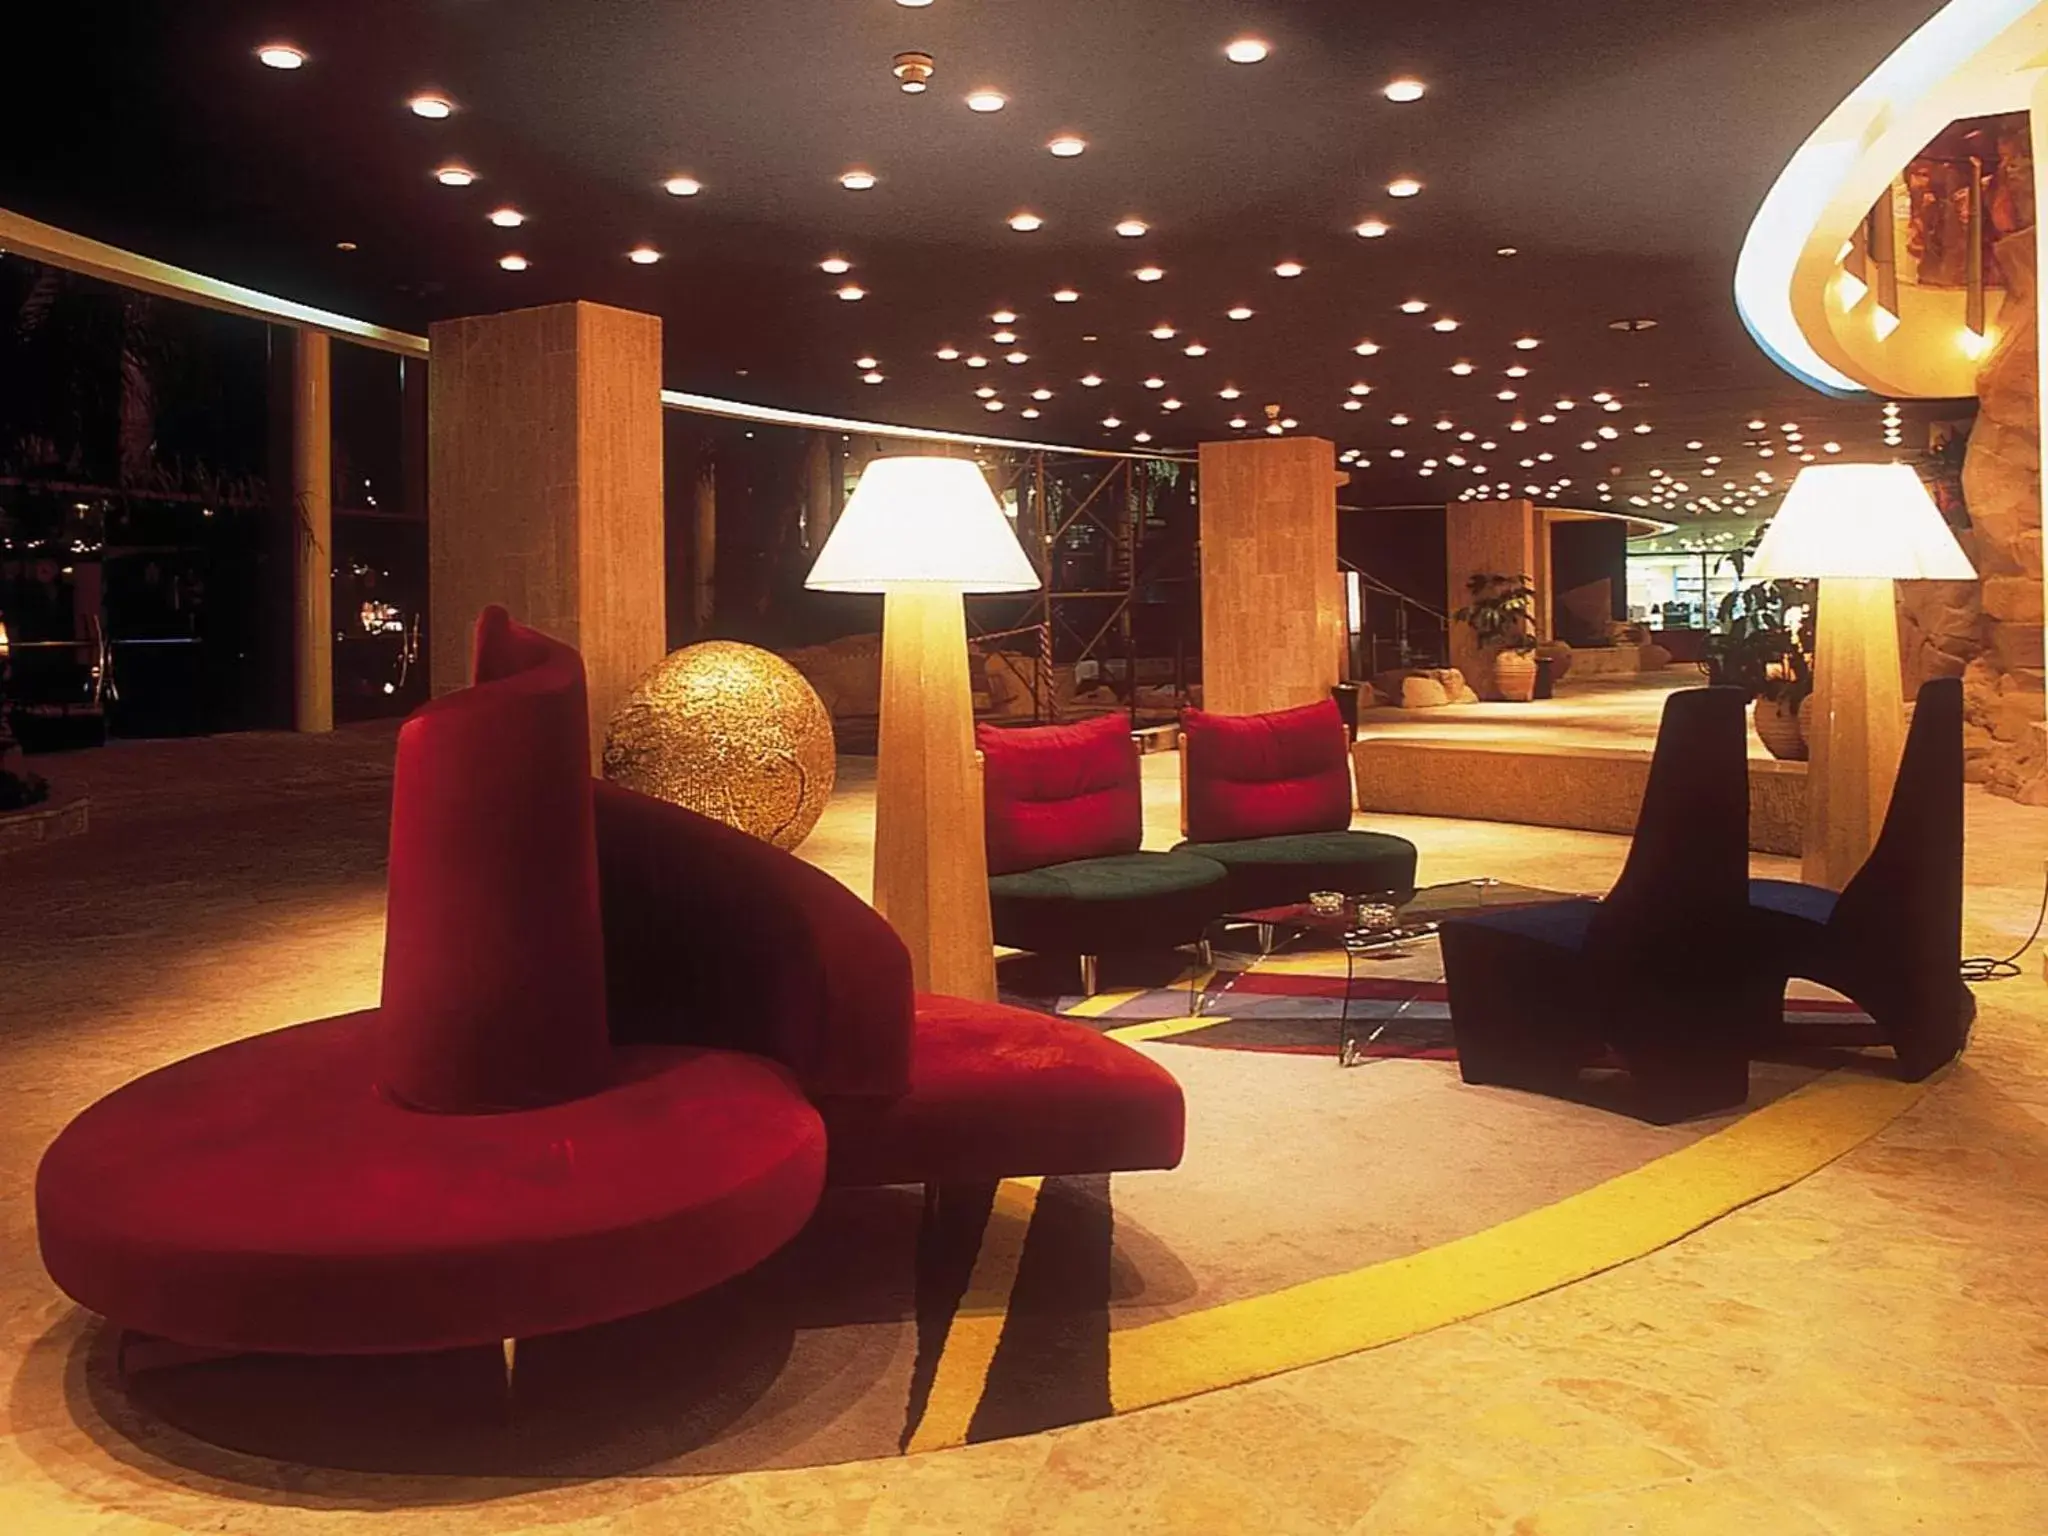 Lobby or reception, Lobby/Reception in Dan Eilat Hotel